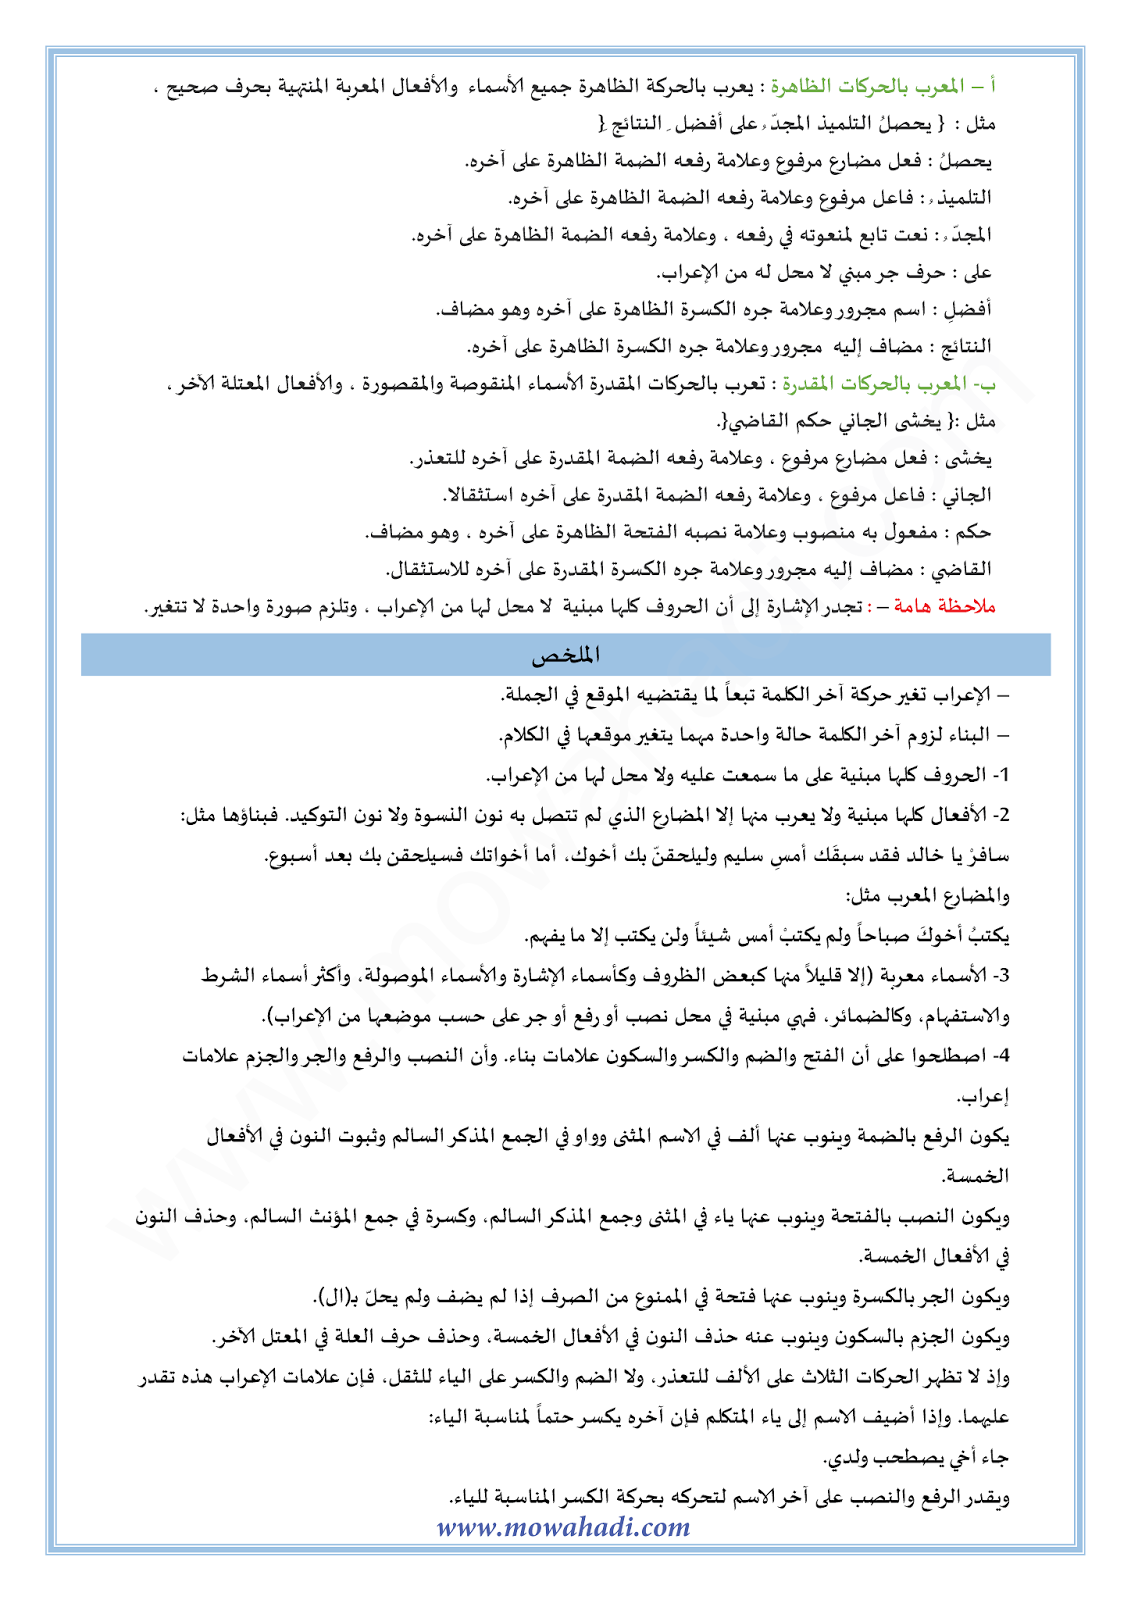 الدرس اللغوي الاعراب و البناء للسنة الأولى اعدادي في مادة اللغة العربية 7-cours-dars-loghawi1_002